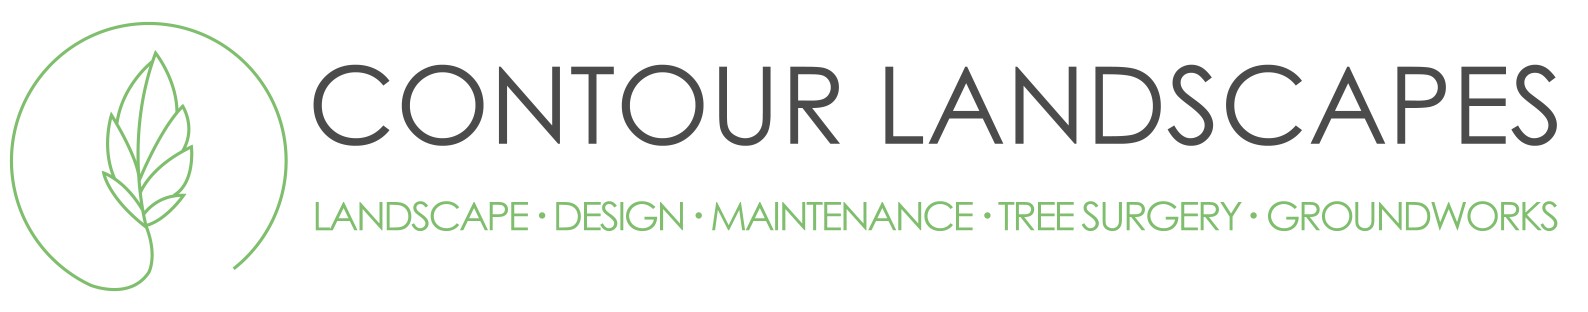 Contour Landscapes Web Logo